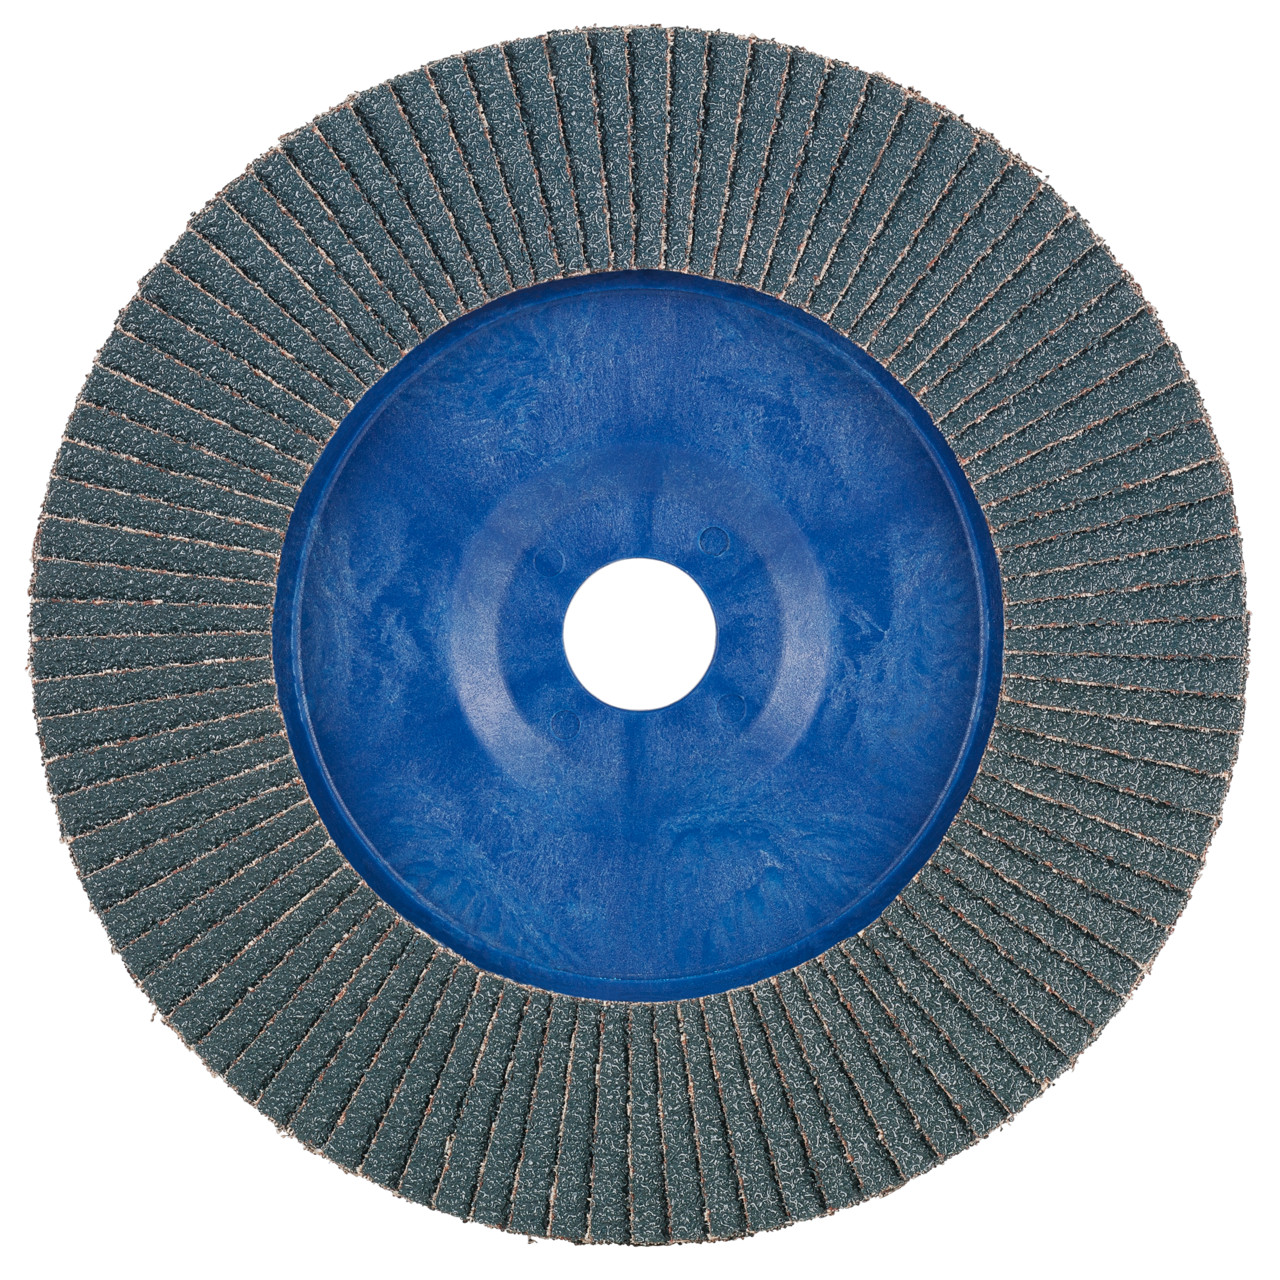 Rondella dentata Tyrolit DxH 115x22.2 2in1 per acciaio e acciaio inox, P60, forma: 28N - versione diritta (corpo portante in plastica), Art. 847924